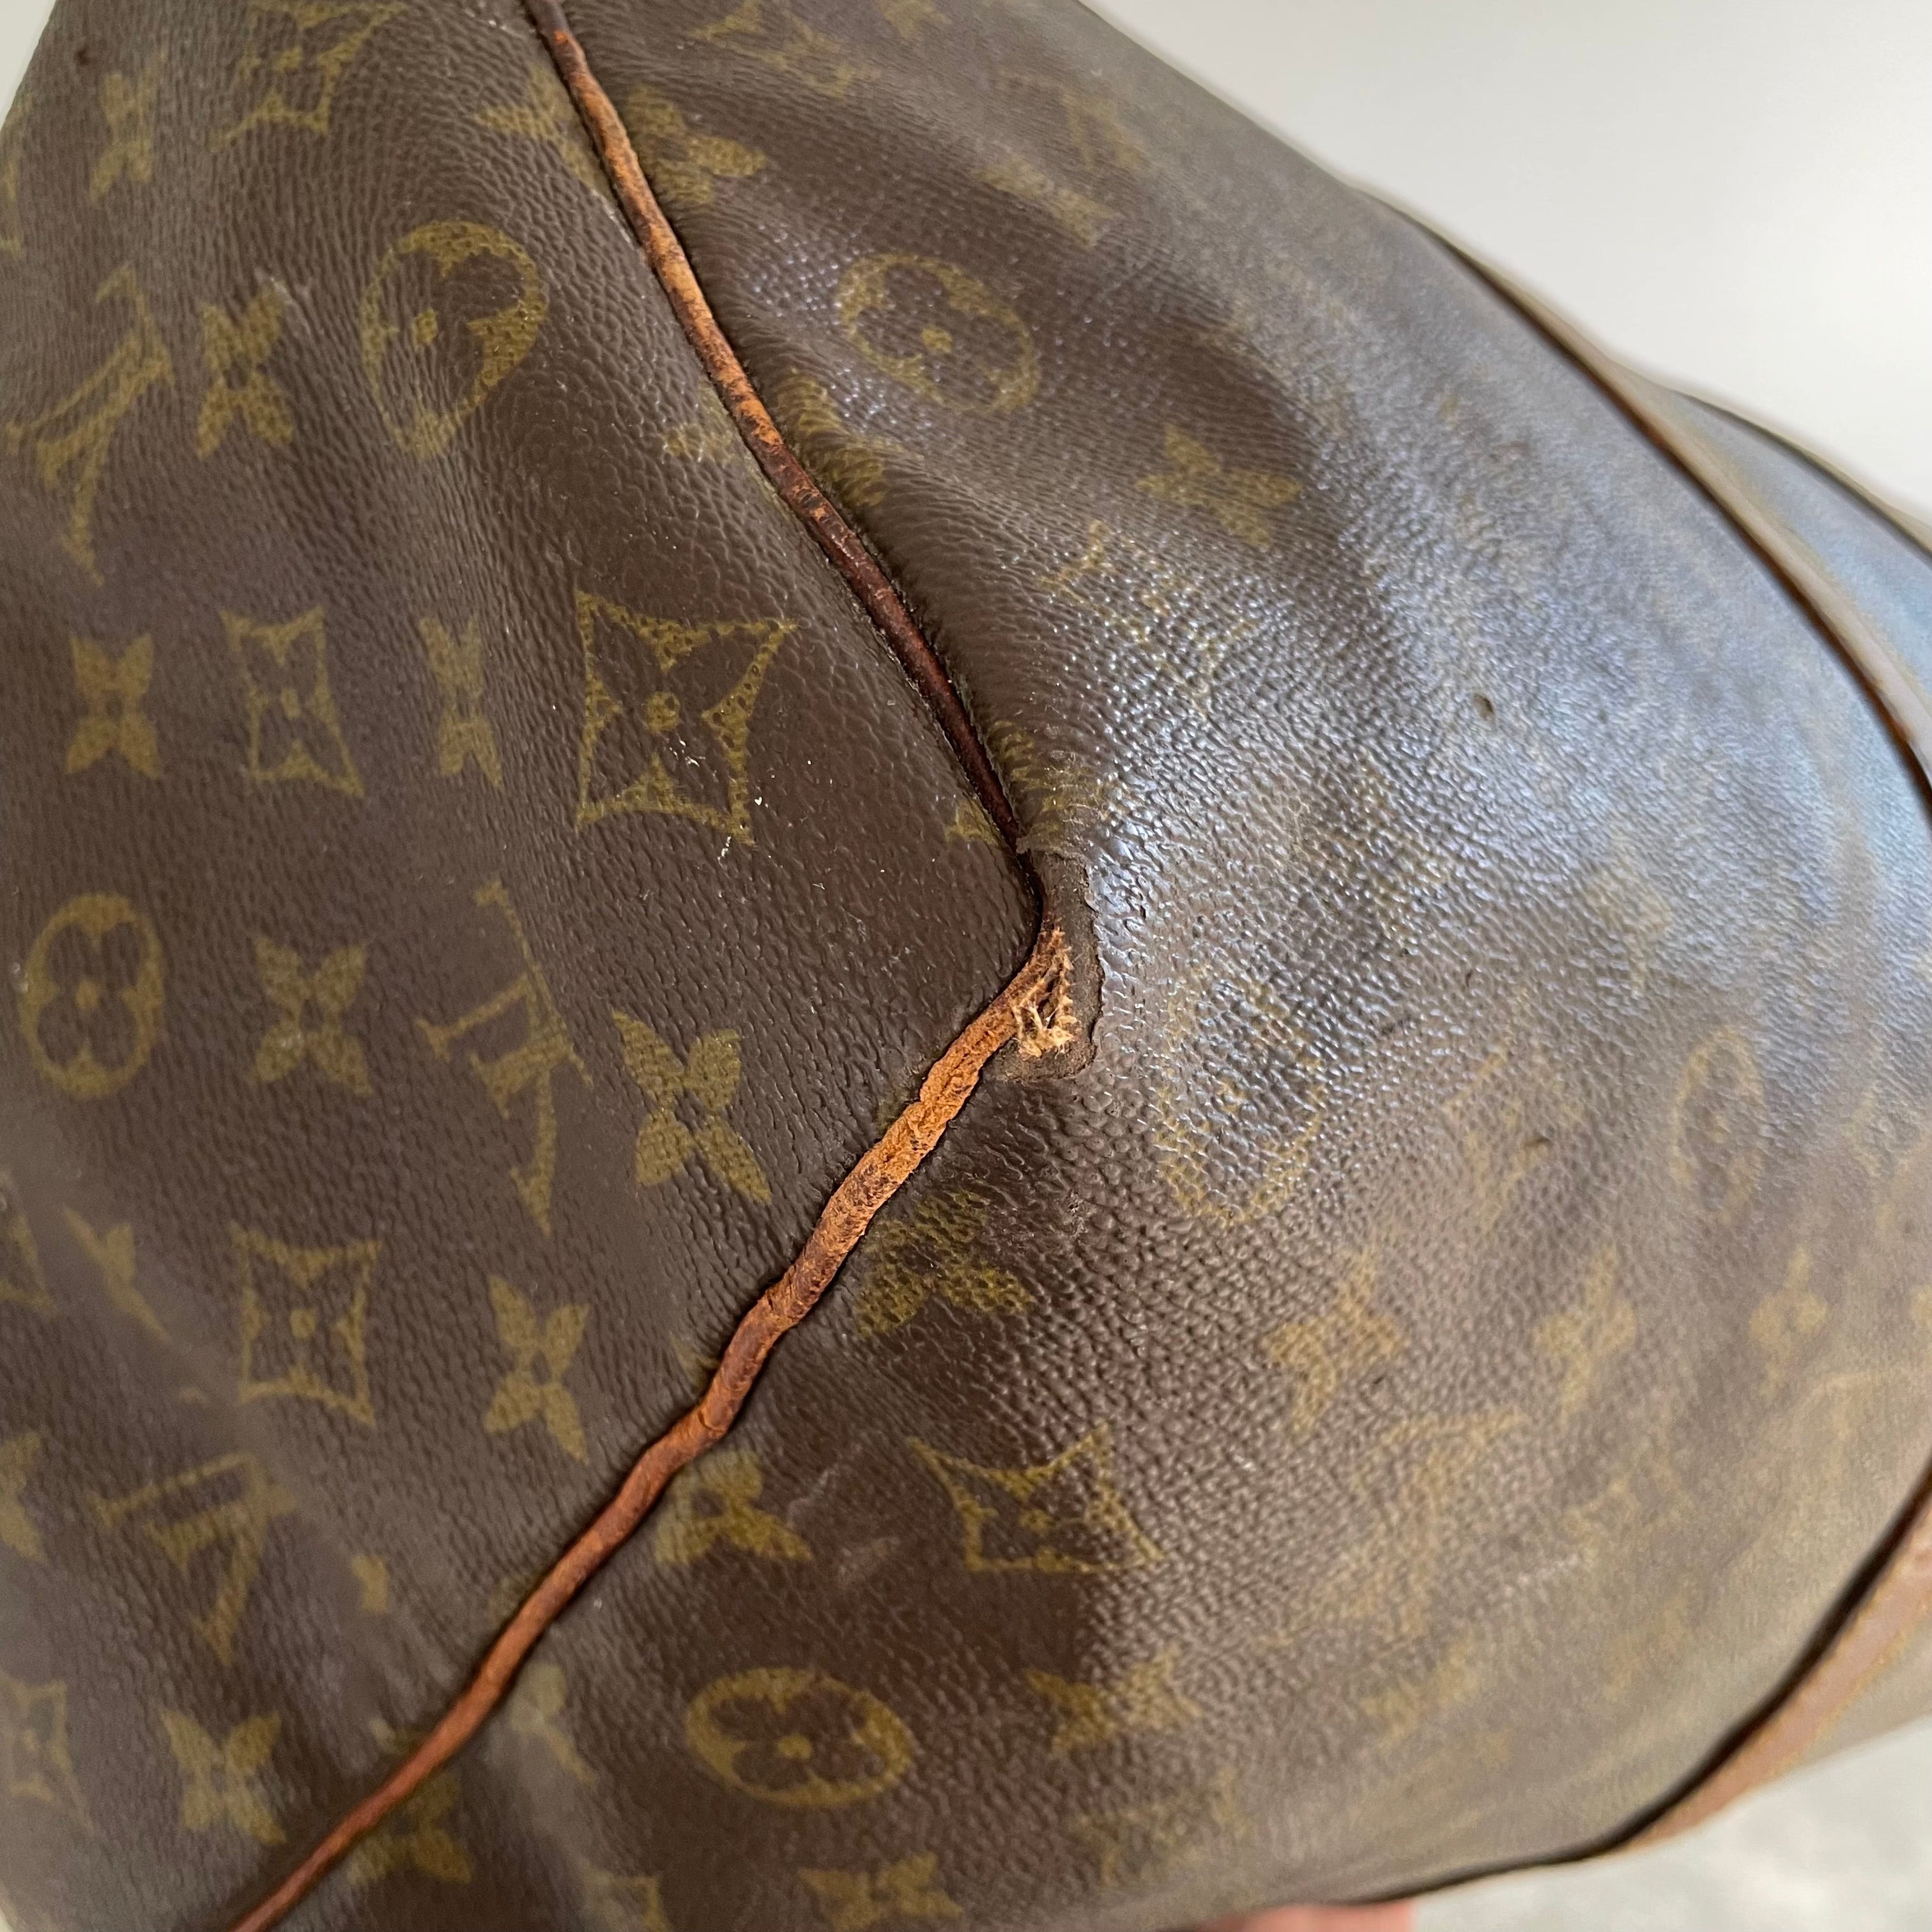 Sold at Auction: LTD 2019 Louis Vuitton Bandouliére 50 Duffle Bag